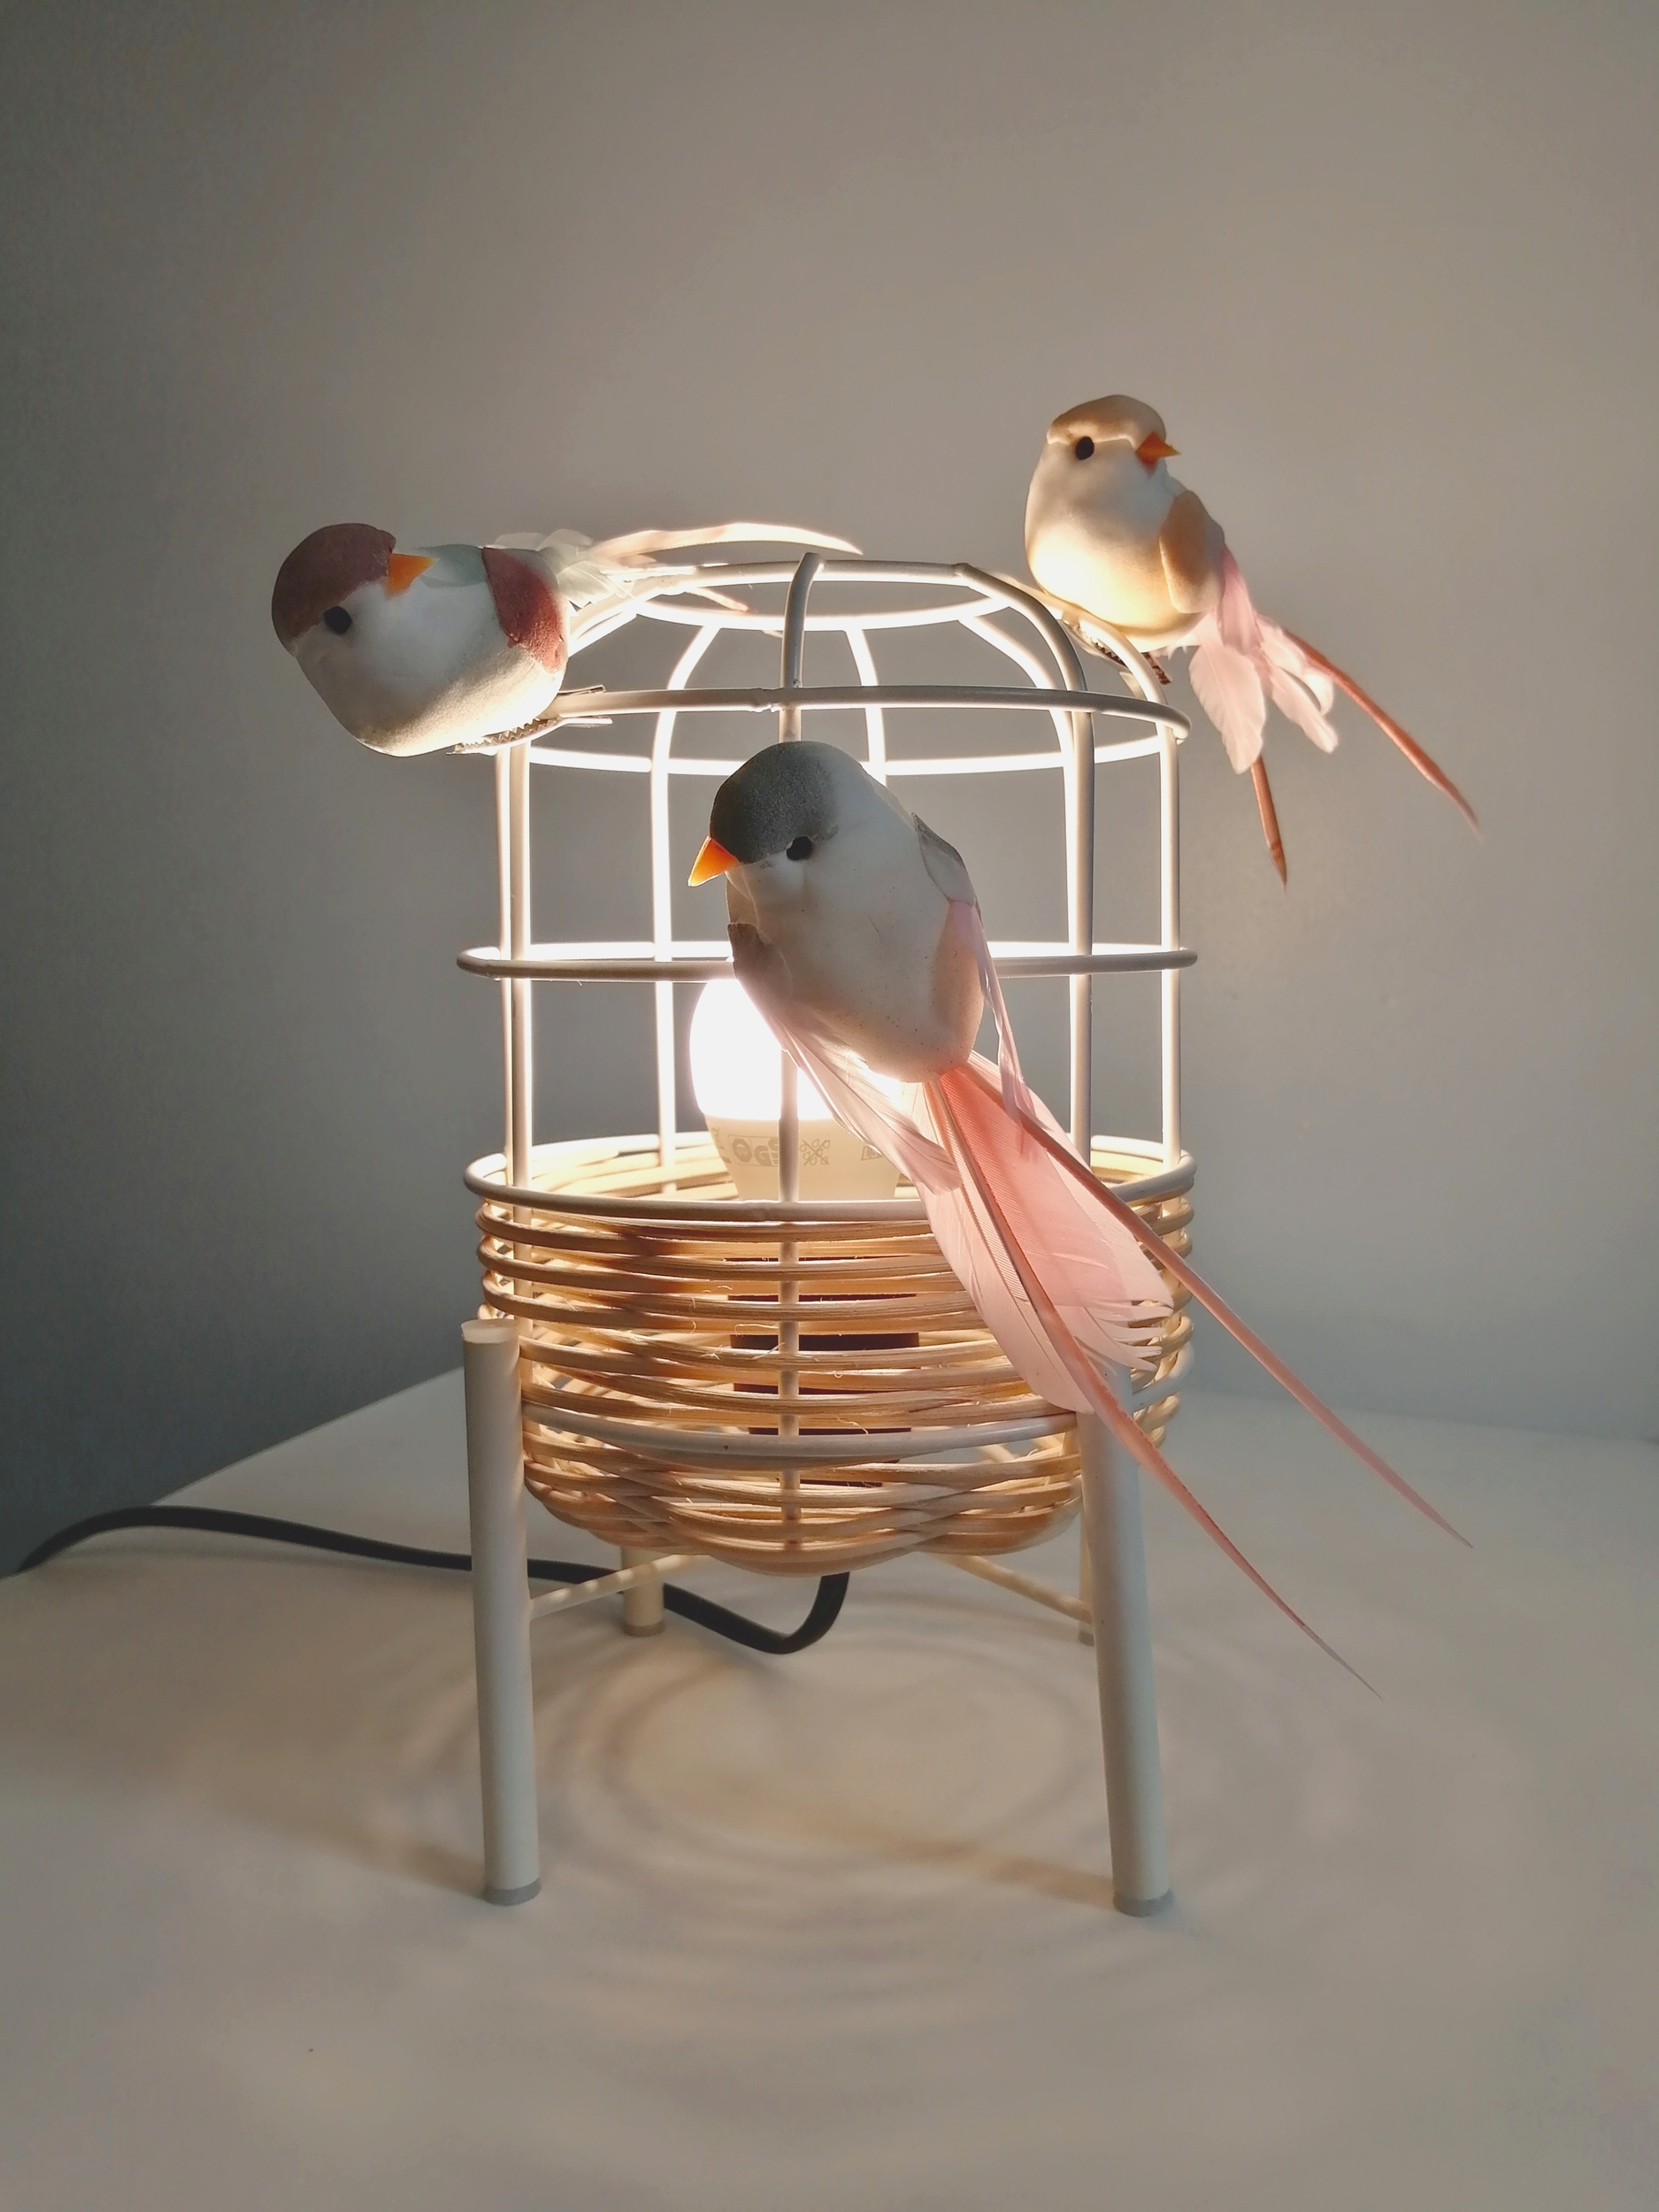 lampe-chevet-cage-oiseau-pastel-plume-rose-gris-bleu-decoration-chambre-enfant-bebe